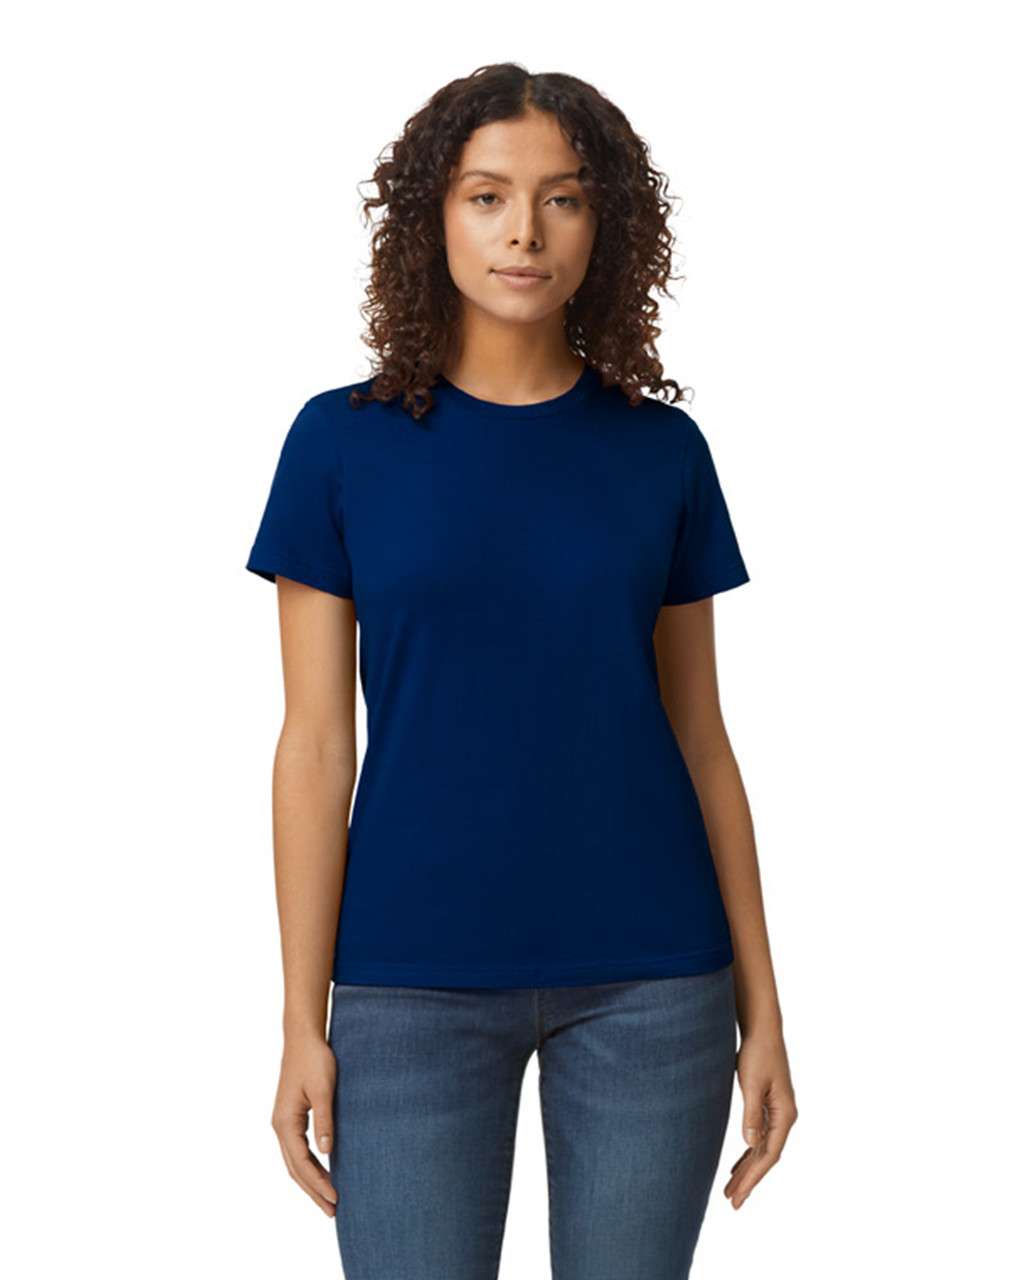 Gildan Softstyle® Midweight Women's T-shirt - blue